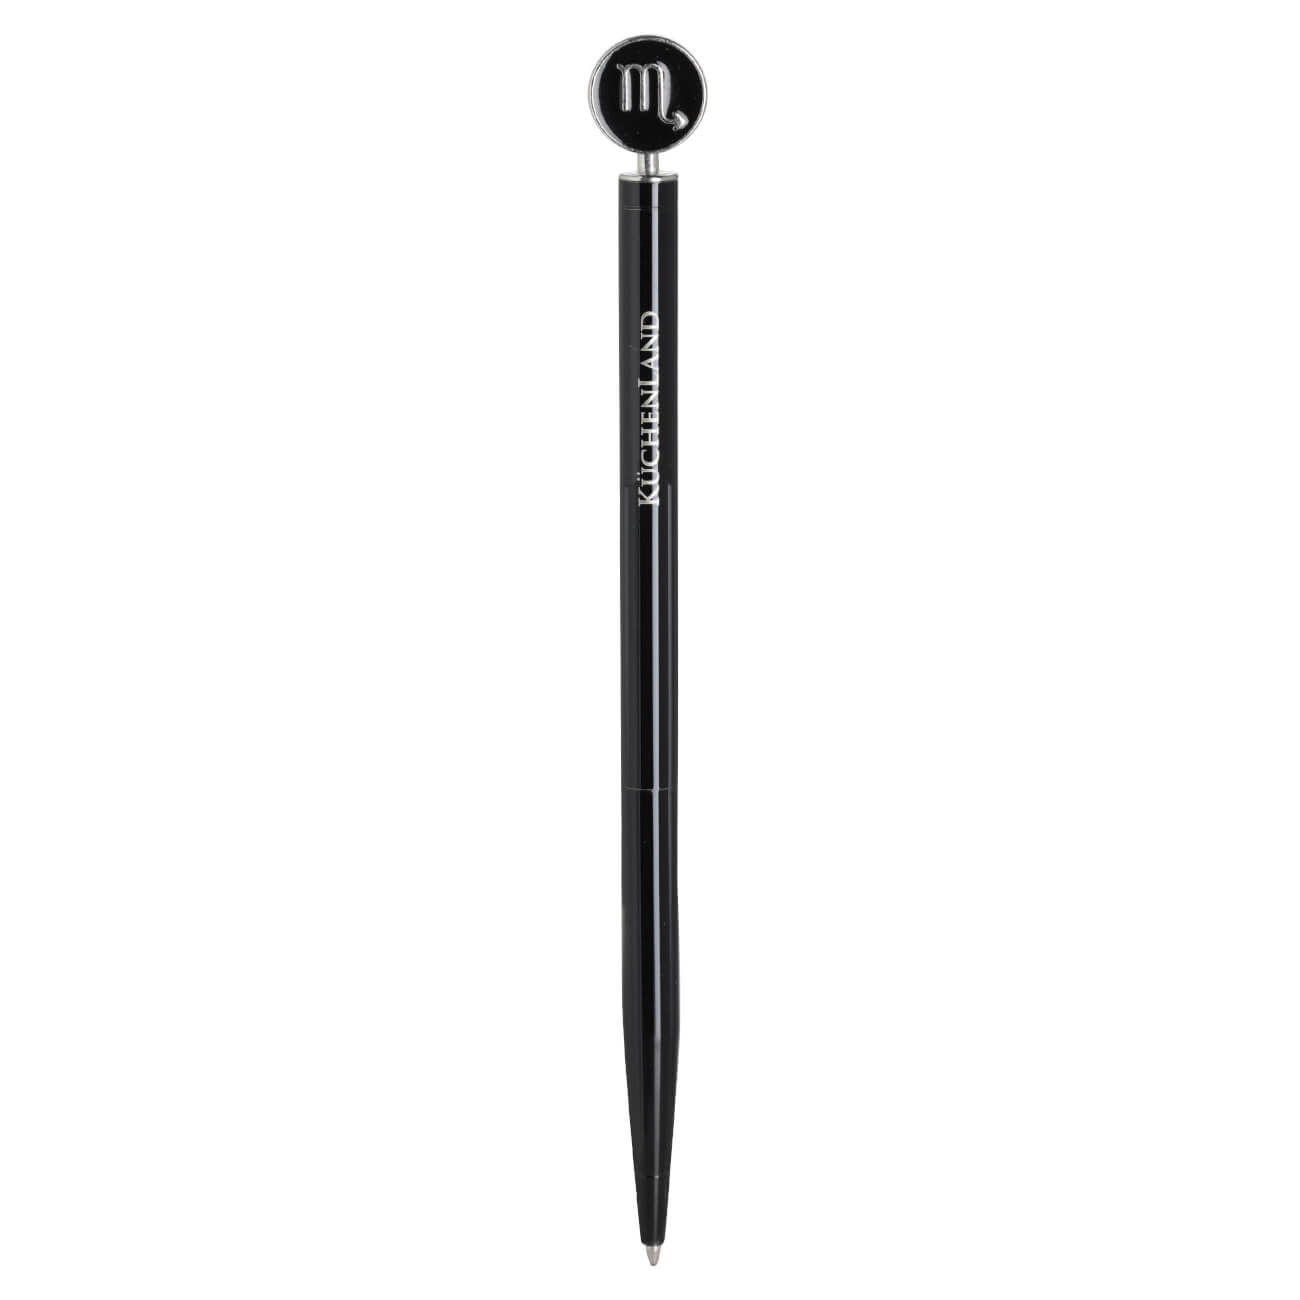 Ручка шариковая, 15 см, с фигуркой, сталь, черно-серебристая, Скорпион, Zodiac ручка скоба cappio pc183 96 мм бронза